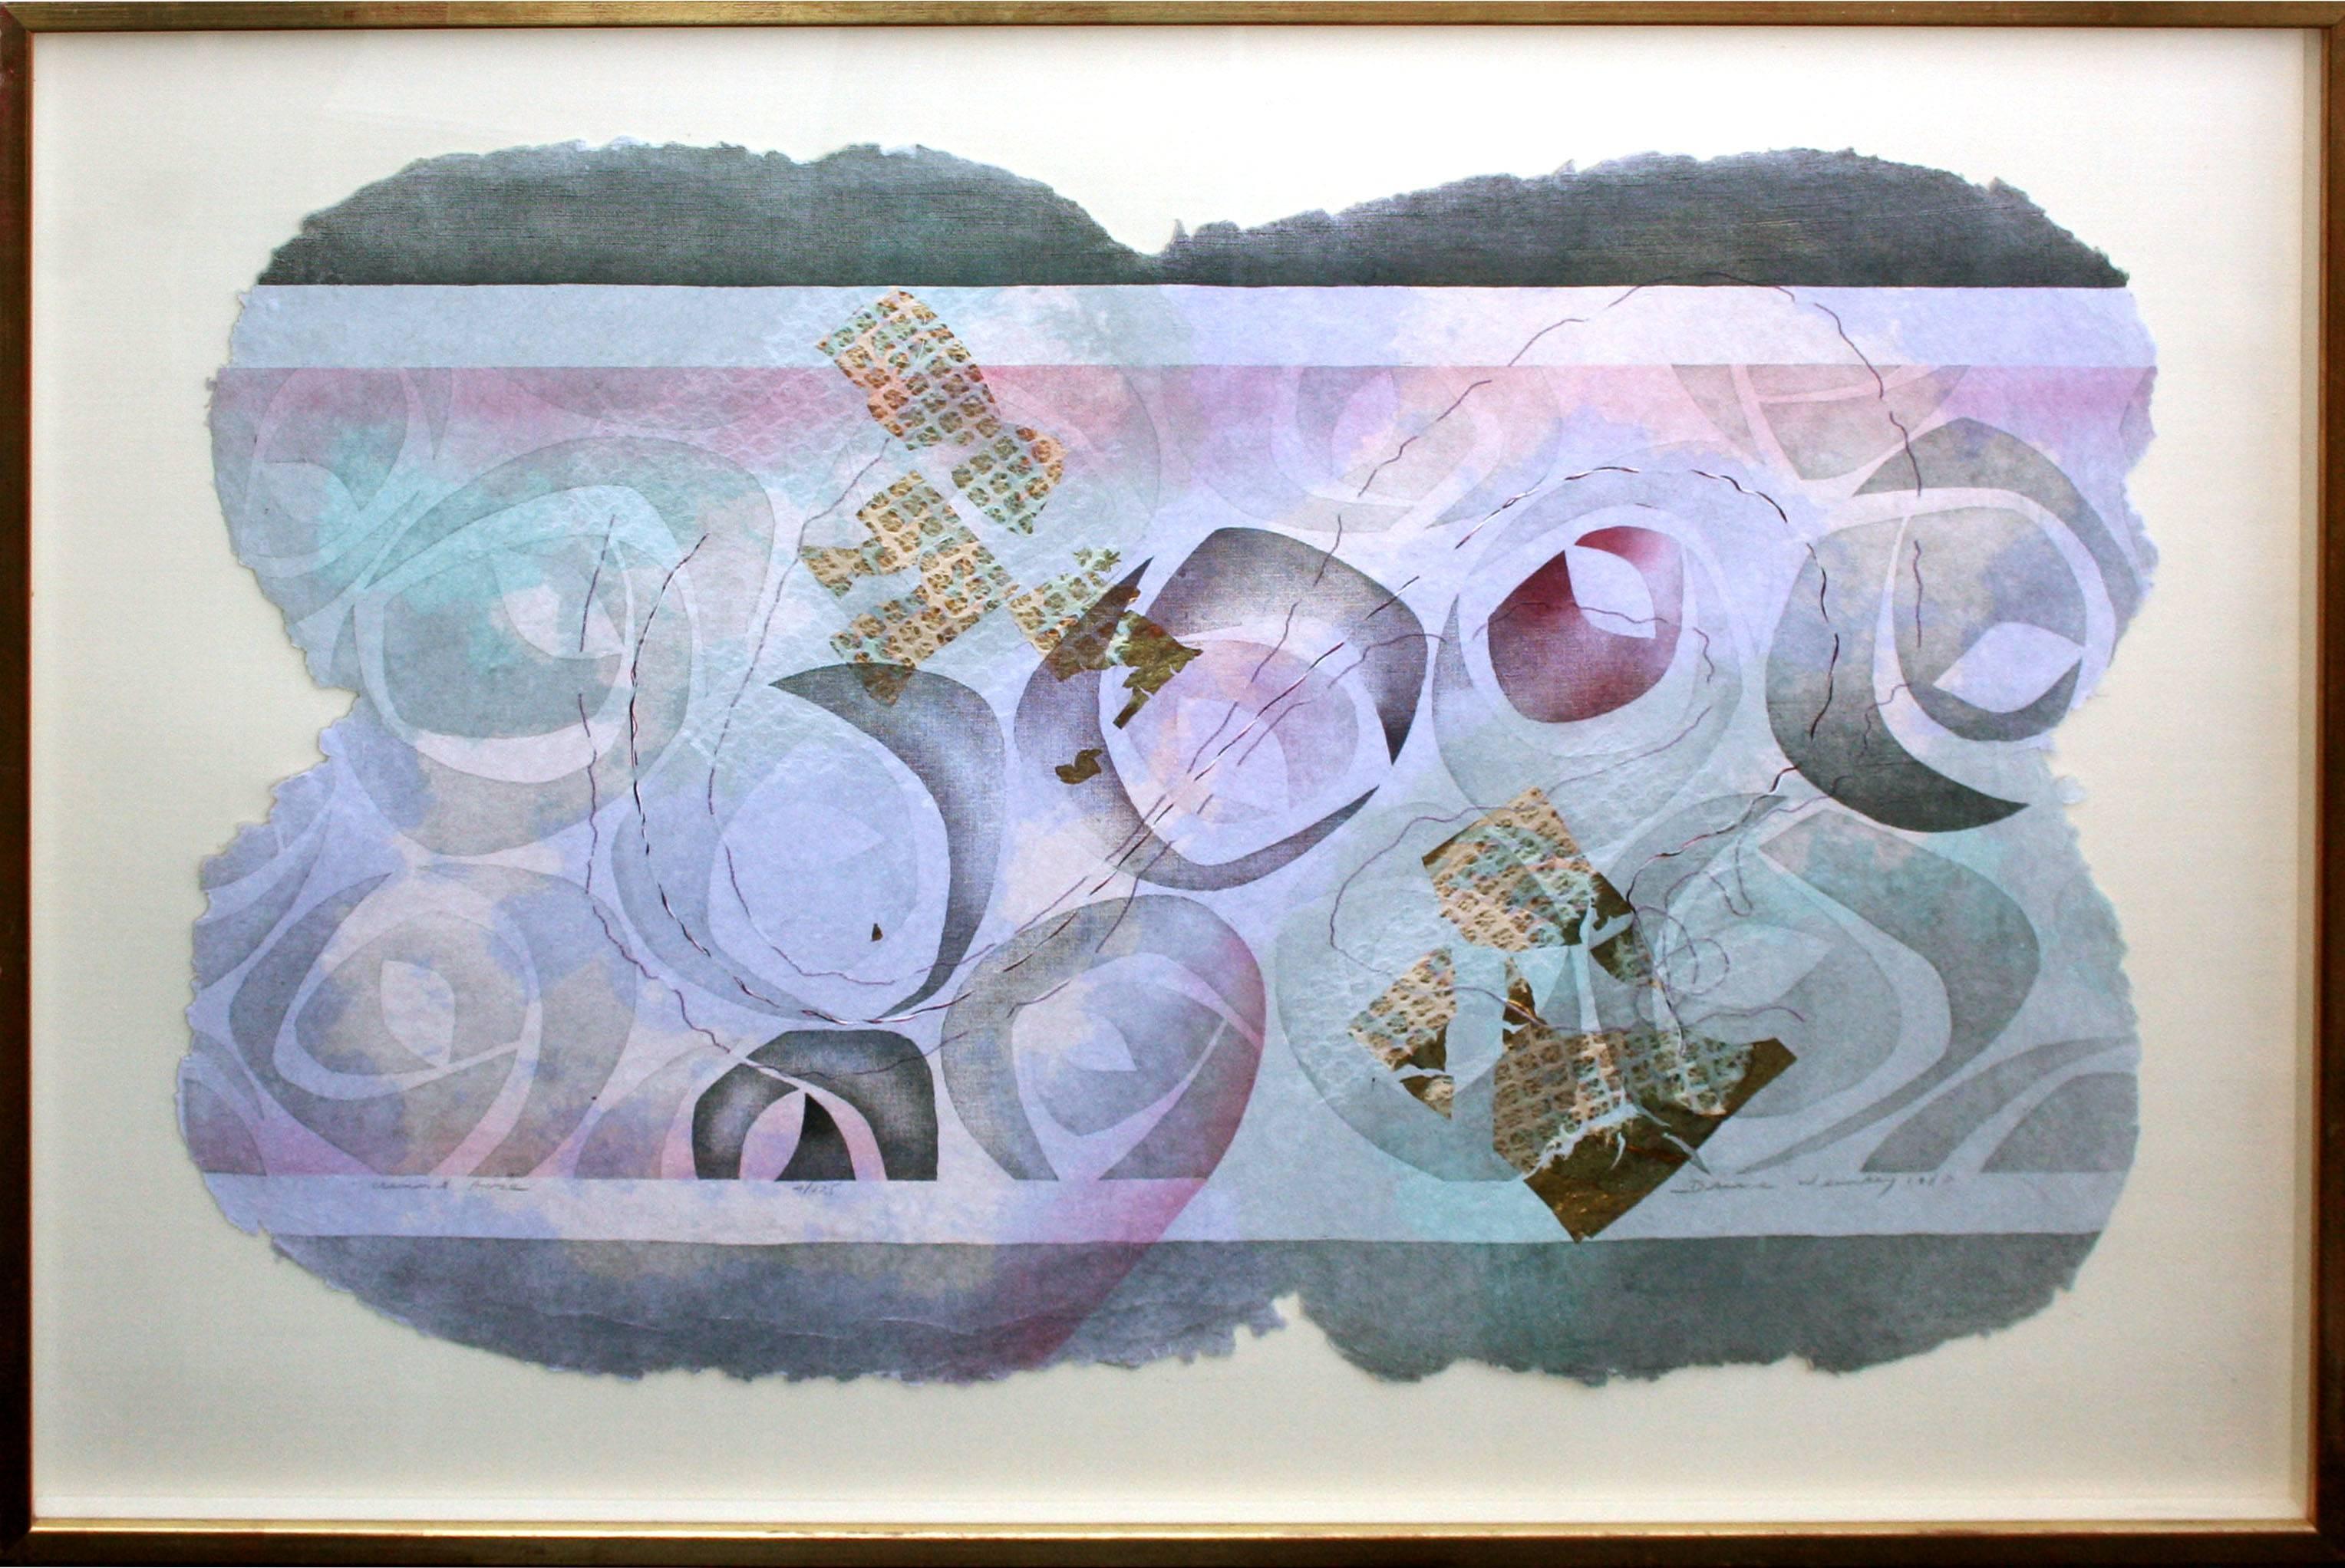 "Crescent Rose" Mixed Media Handmade Paper Aquarell Abstrakt von Bruce Weinberg

Sanfte Lavendelfarben, Magentatöne und Grautöne, hervorgehoben durch violette Fäden und Blattgold, vermischen sich zu einem sanften und lieblichen abstrakten Werk des